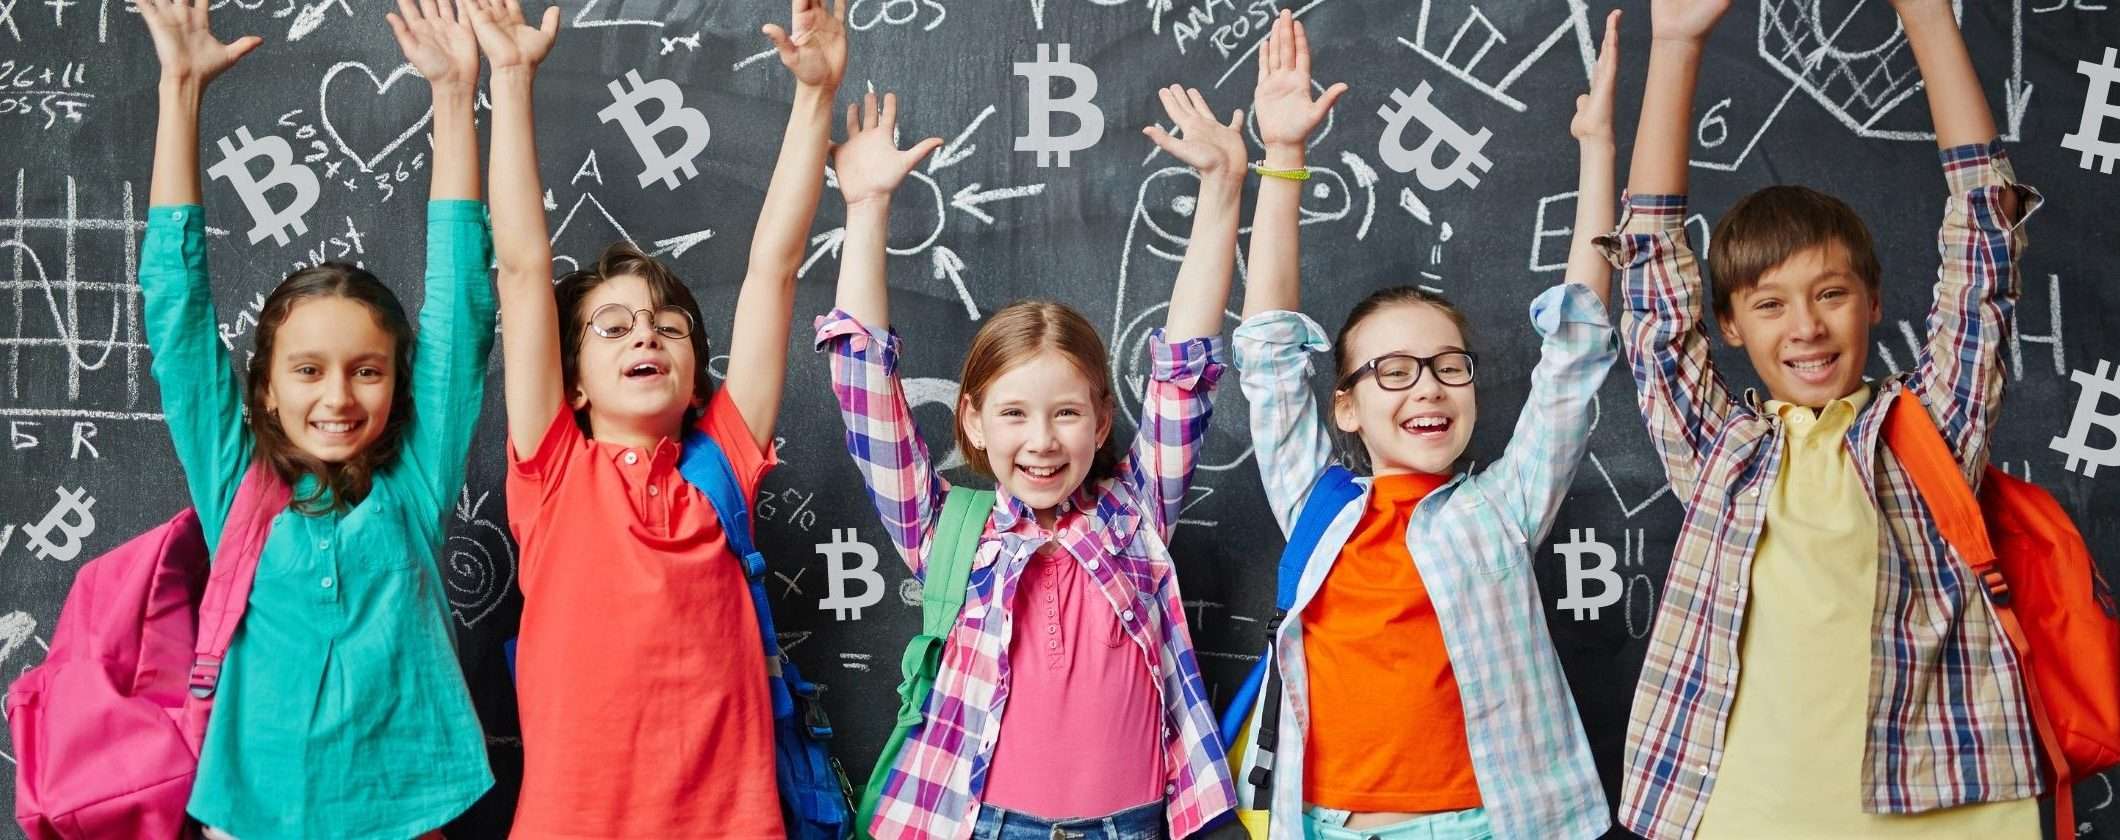 Bitcoin diventa una materia: la crypto potrebbe entrare nelle scuole